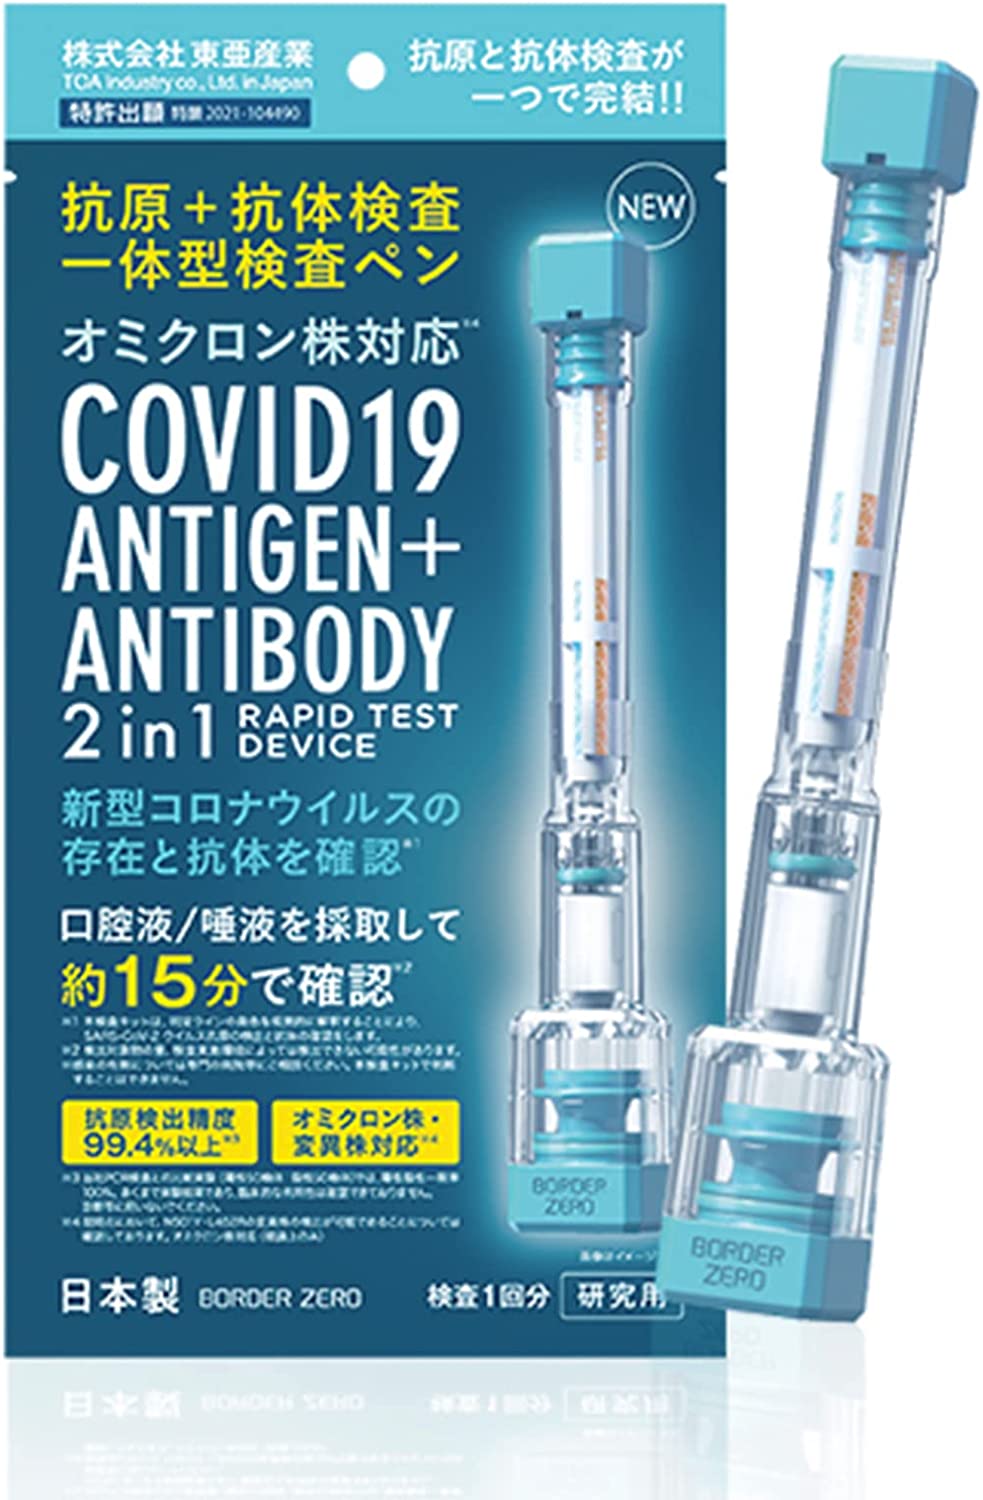 مستضد 2 في 1 + اختبار جسم مضاد من النوع المتكامل [10 قطع ، صنع في اليابان] مجموعة اختبار مستضد فيروس كورونا الجديد مستضد / معادل اختبار الأجسام المضادة نوع القلم "للبحث"